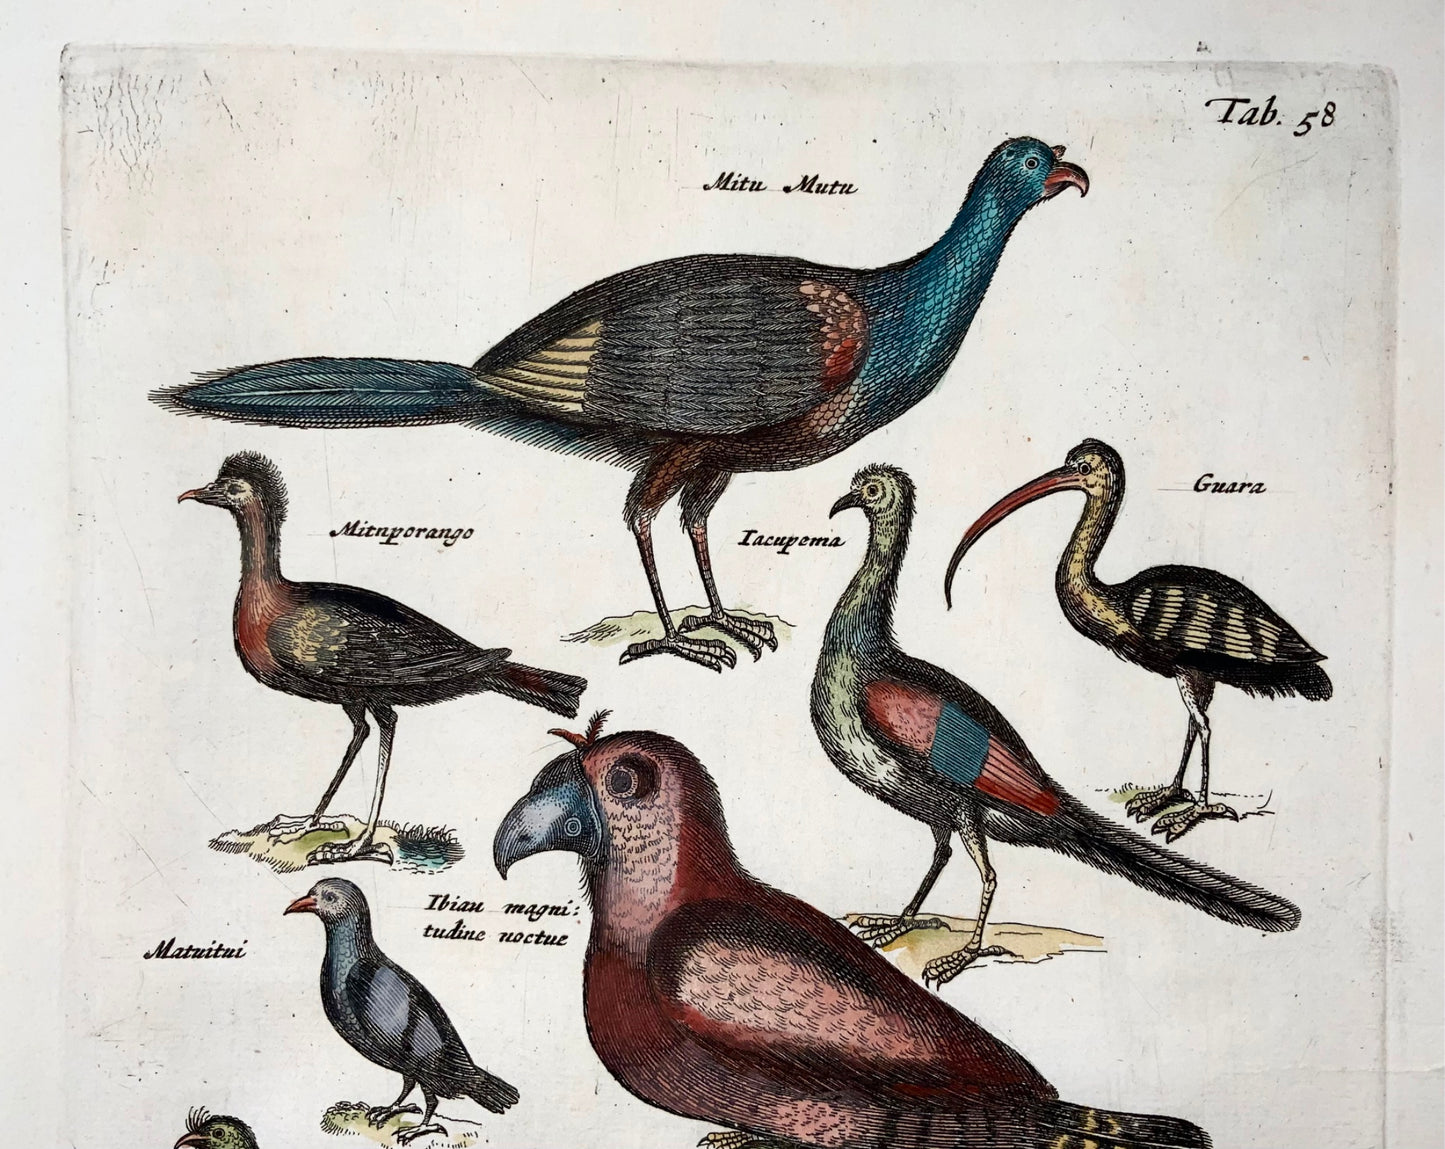 1657 Esotici, uccelli amazzonici, gufo, Matt. Merian, folio, incisione colorata a mano